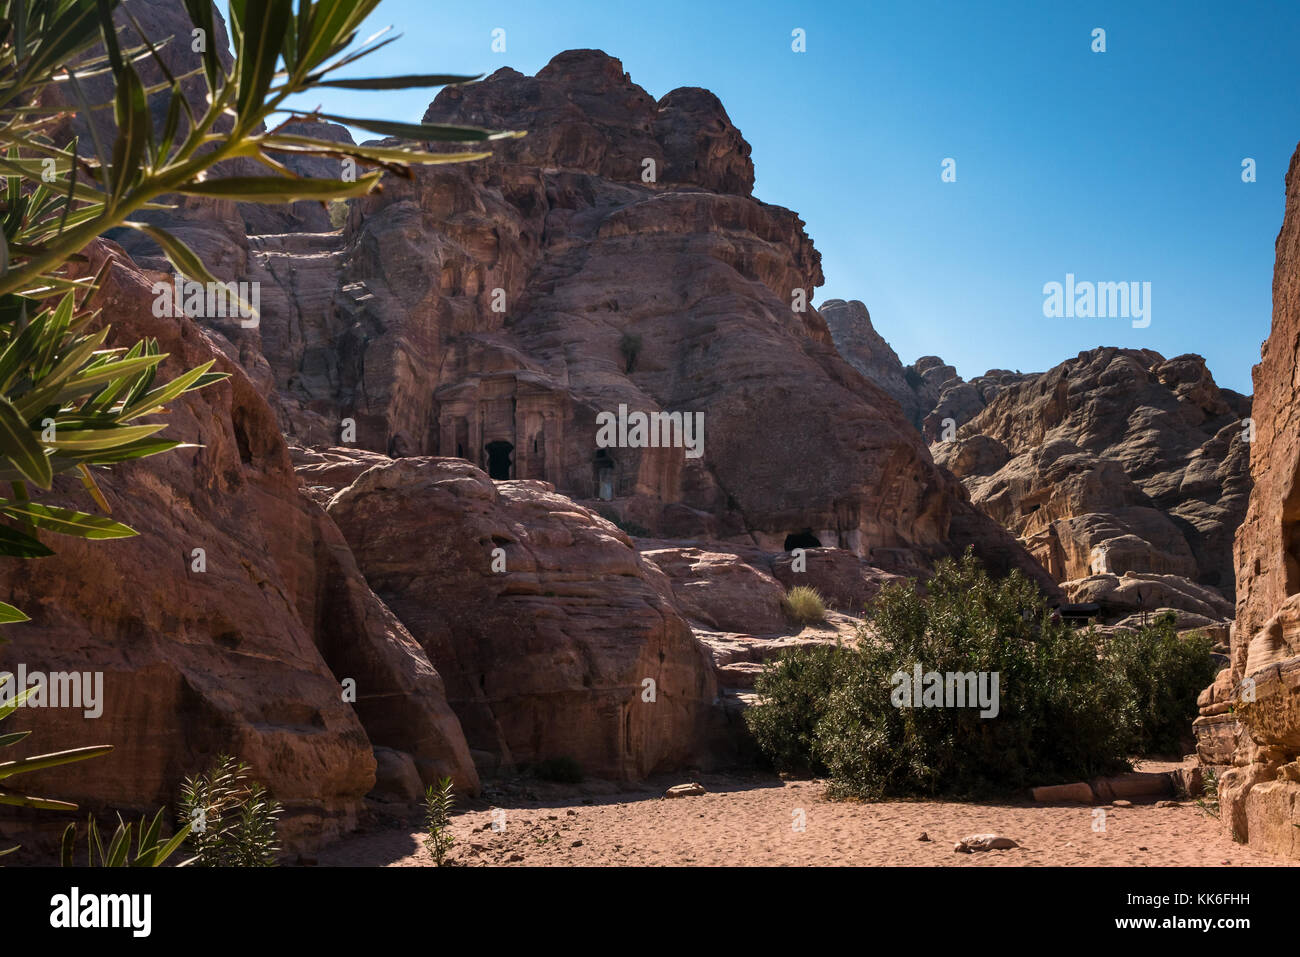 Ruta a pie desde el alto lugar de sacrificios a través de Wadi Farasa con Nabataean tumbas excavadas en las laderas, Petra, Jordania, Oriente Medio Foto de stock